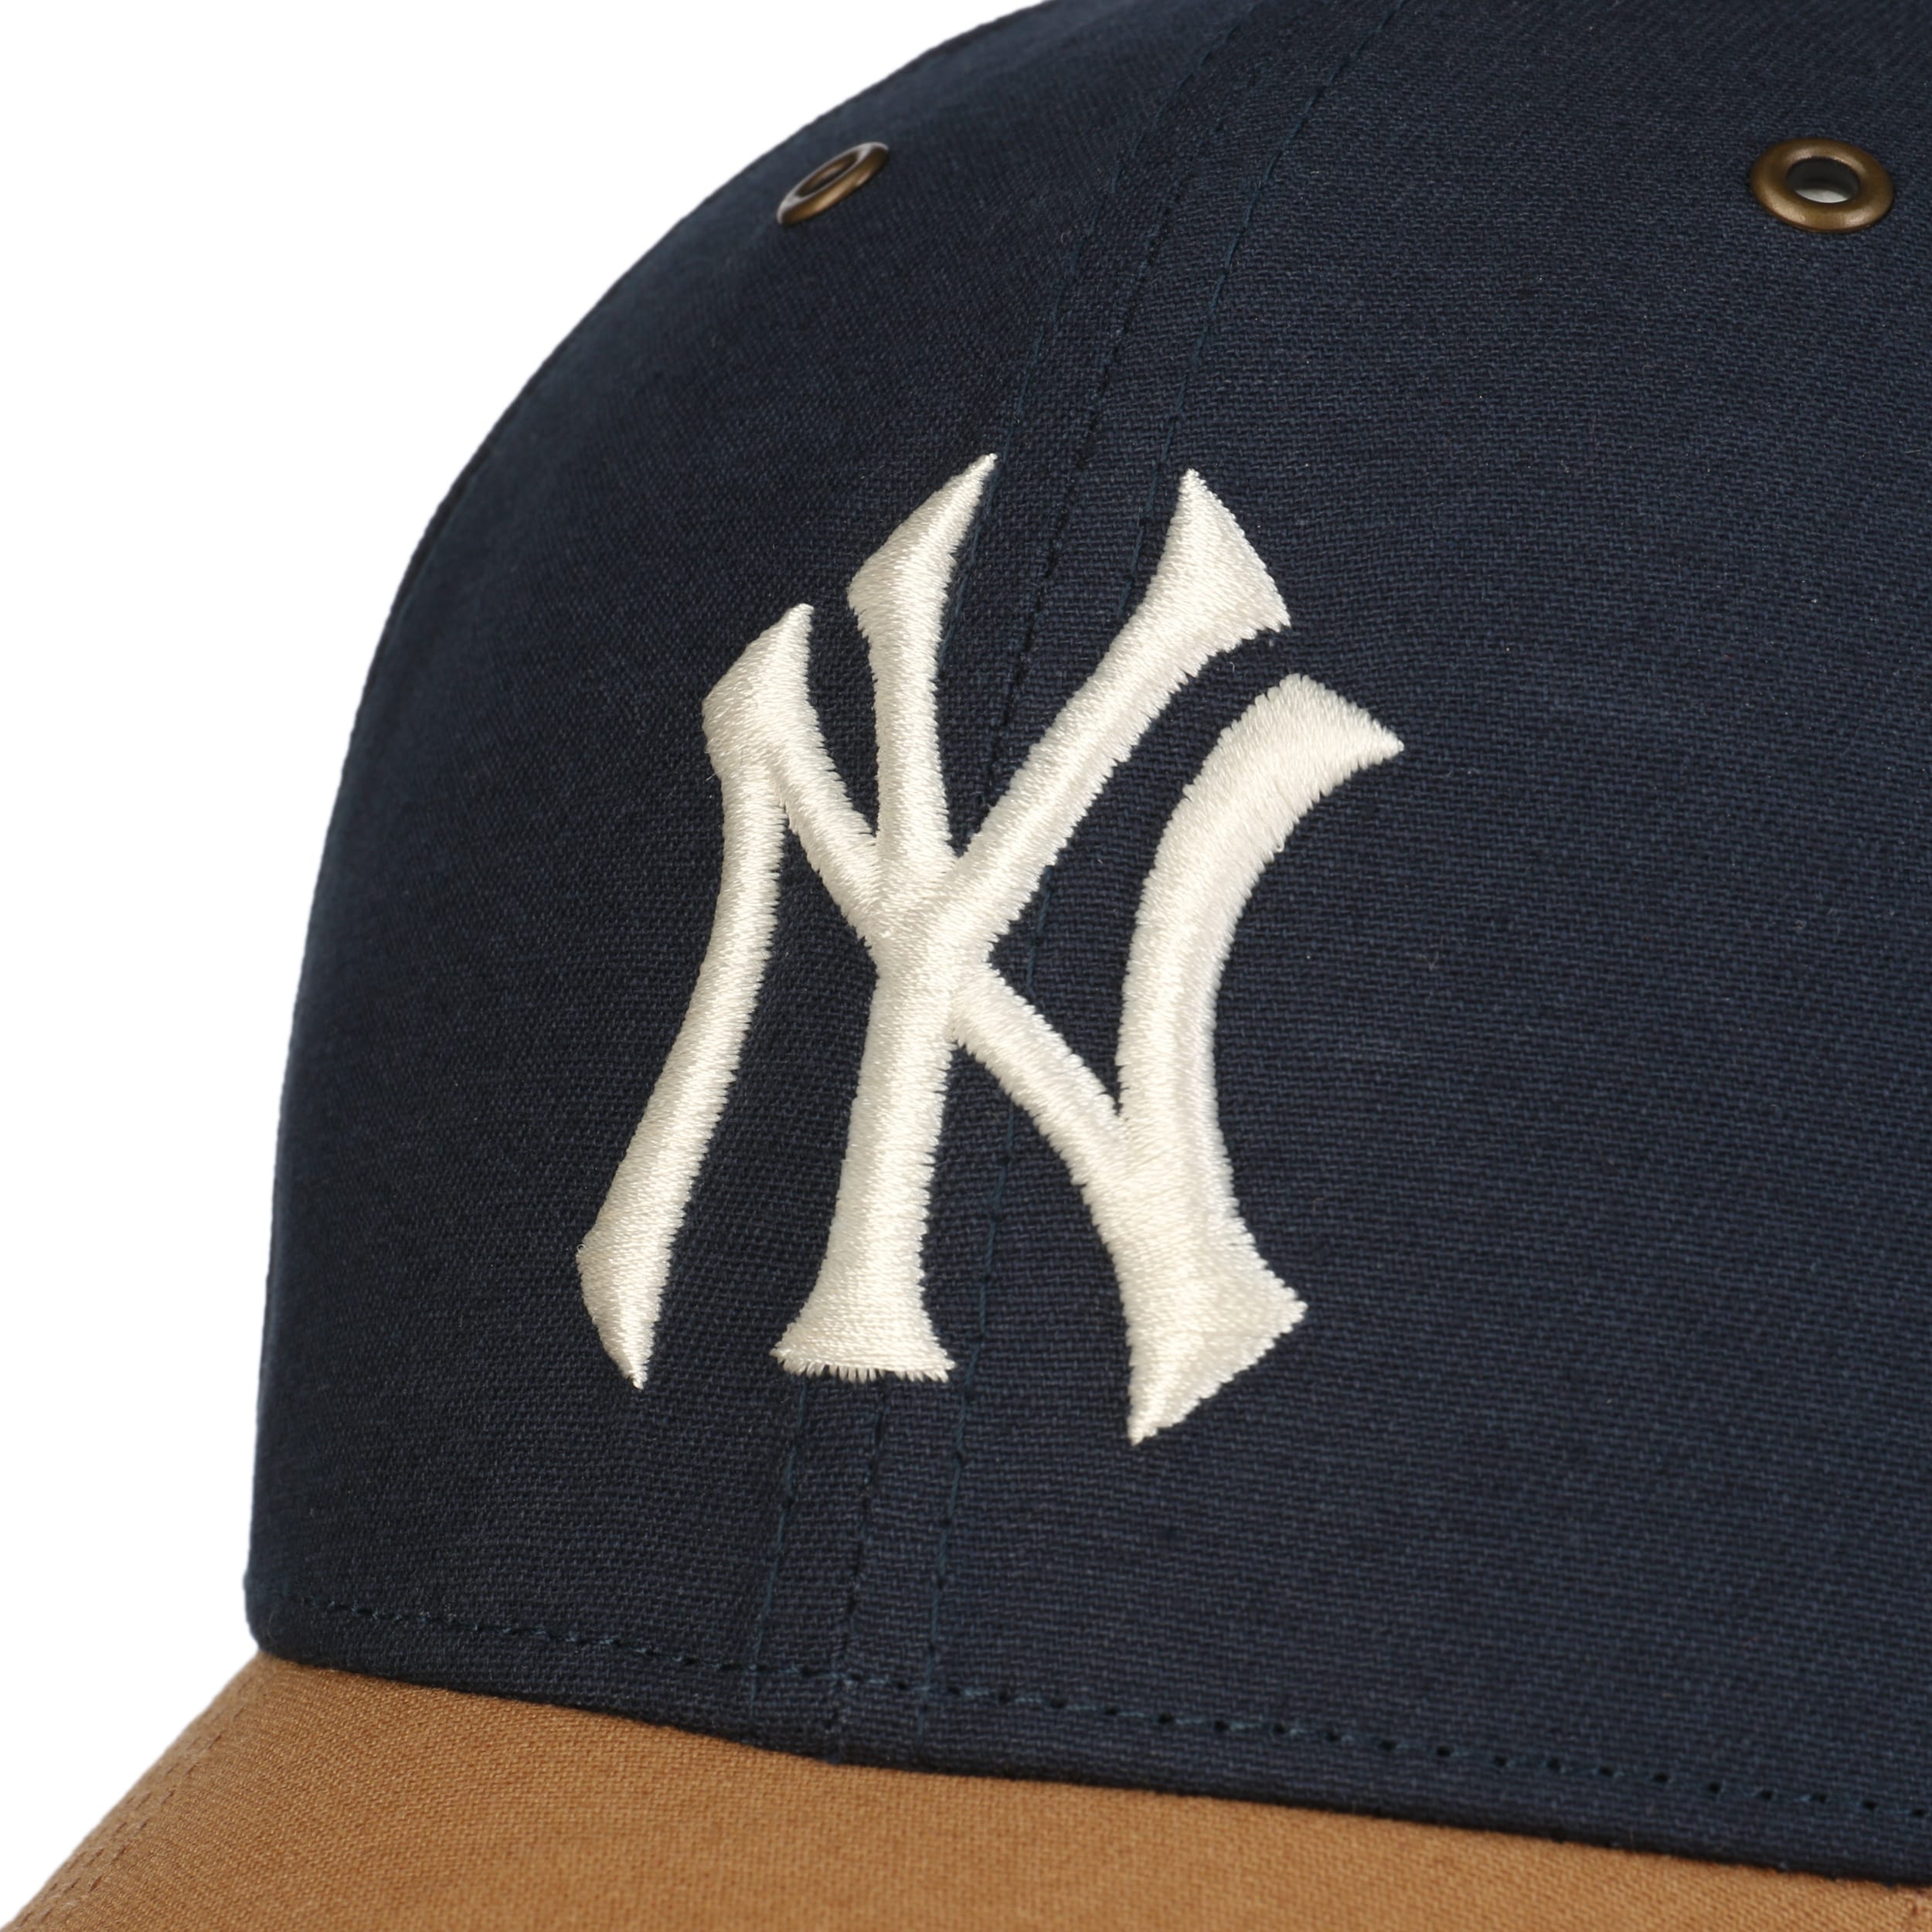 47 MLB New York Yankees Dodgers Campus MVP Cap Grey Man